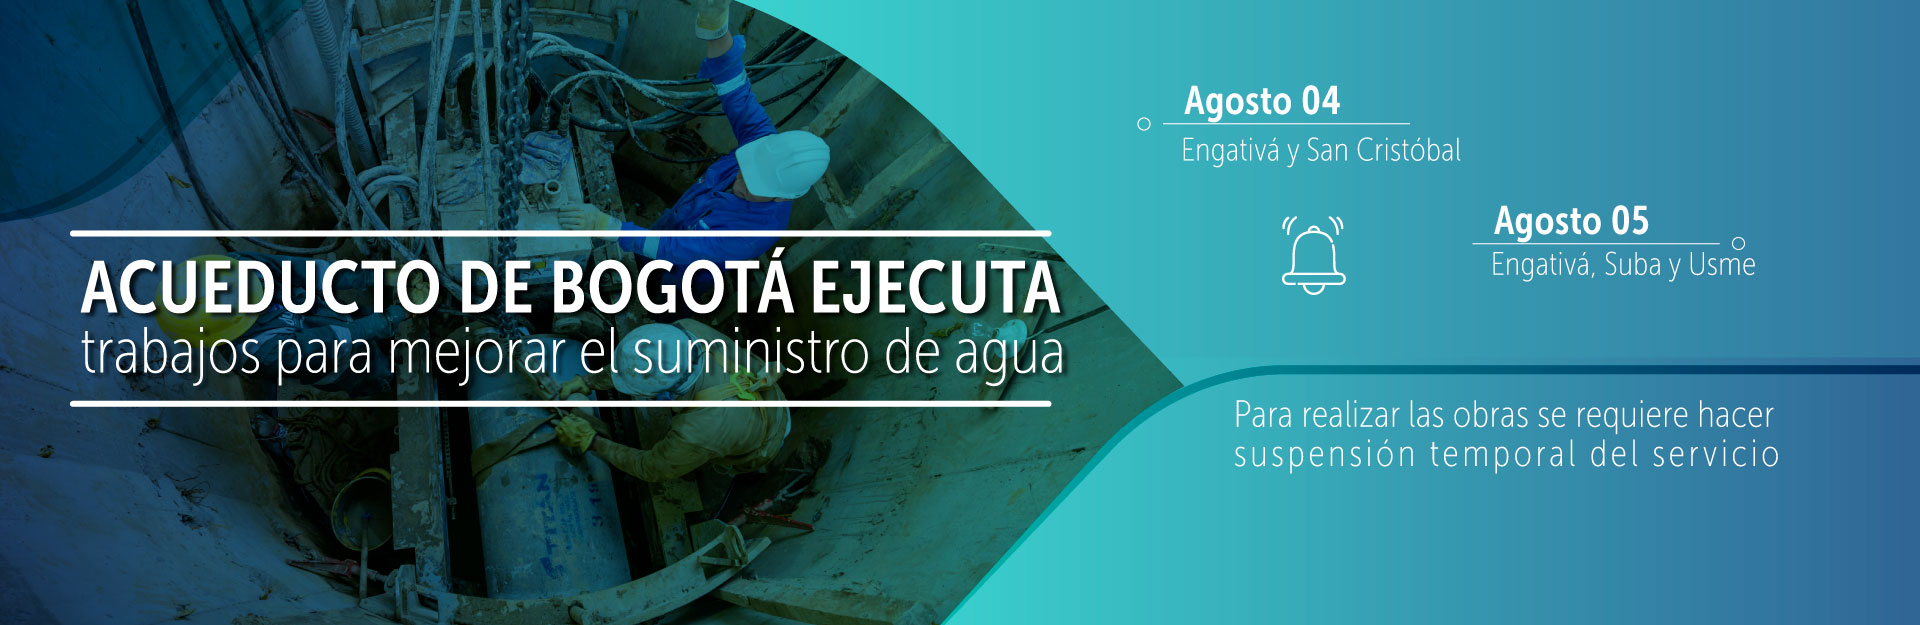 Acueducto de Bogotá ejecuta trabajos para mejorar suministro de agua